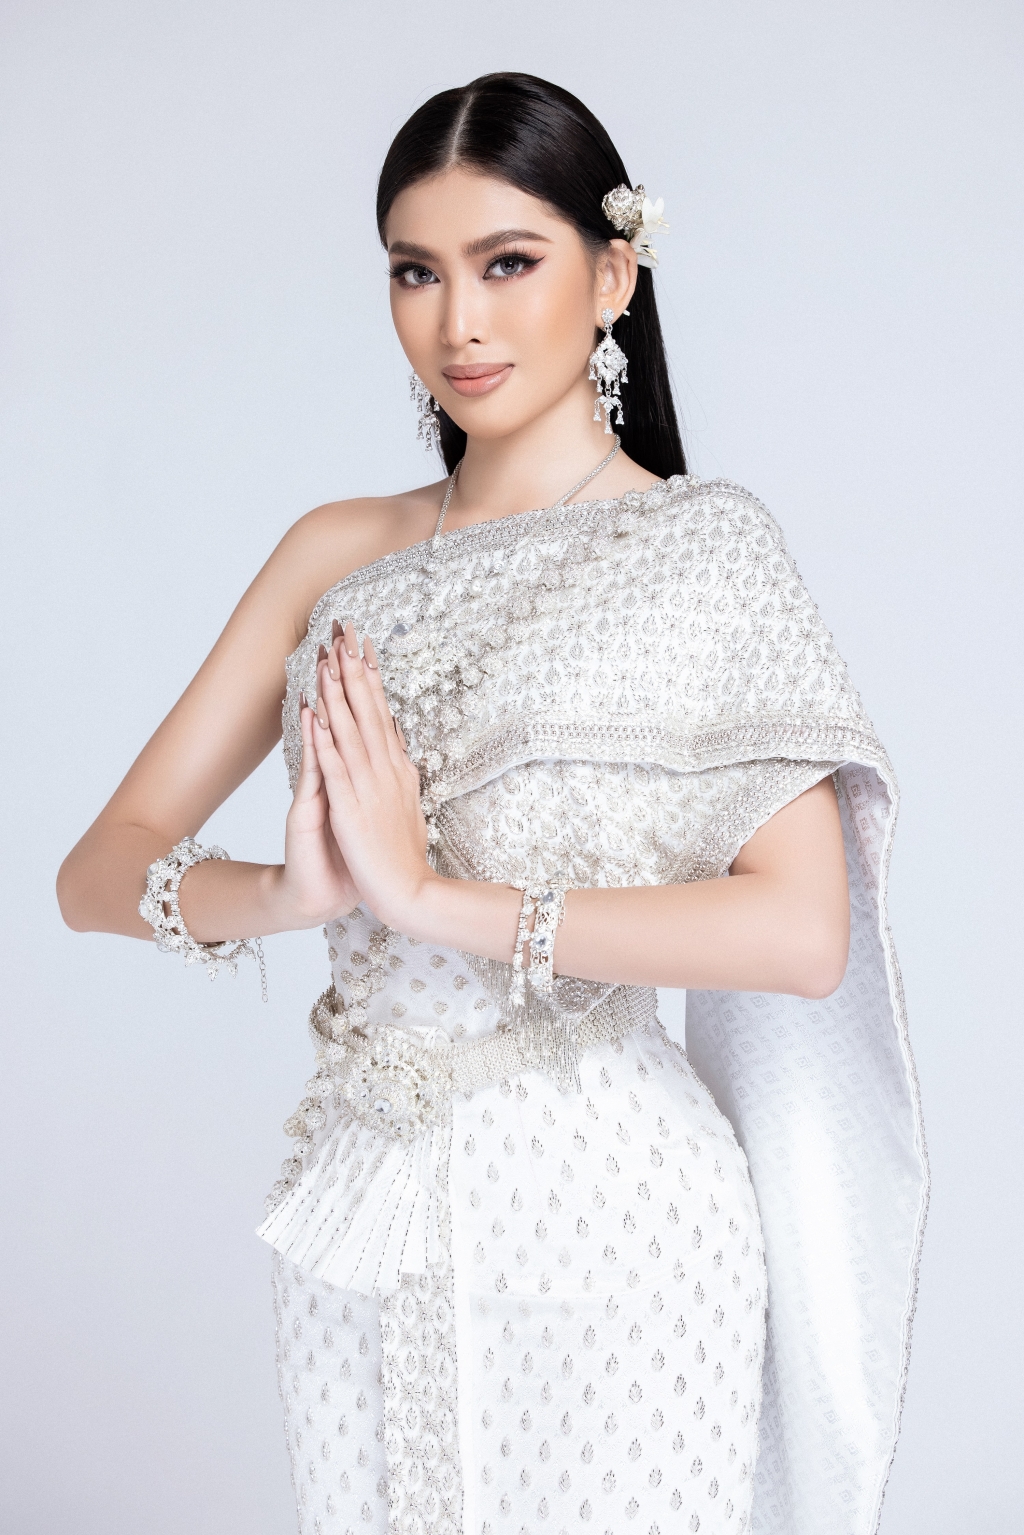 Sau khi lọt top 10 bình chọn video tự giới thiệu, Á hậu Ngọc Thảo tiếp tục thử thách mặc trang phục Thái